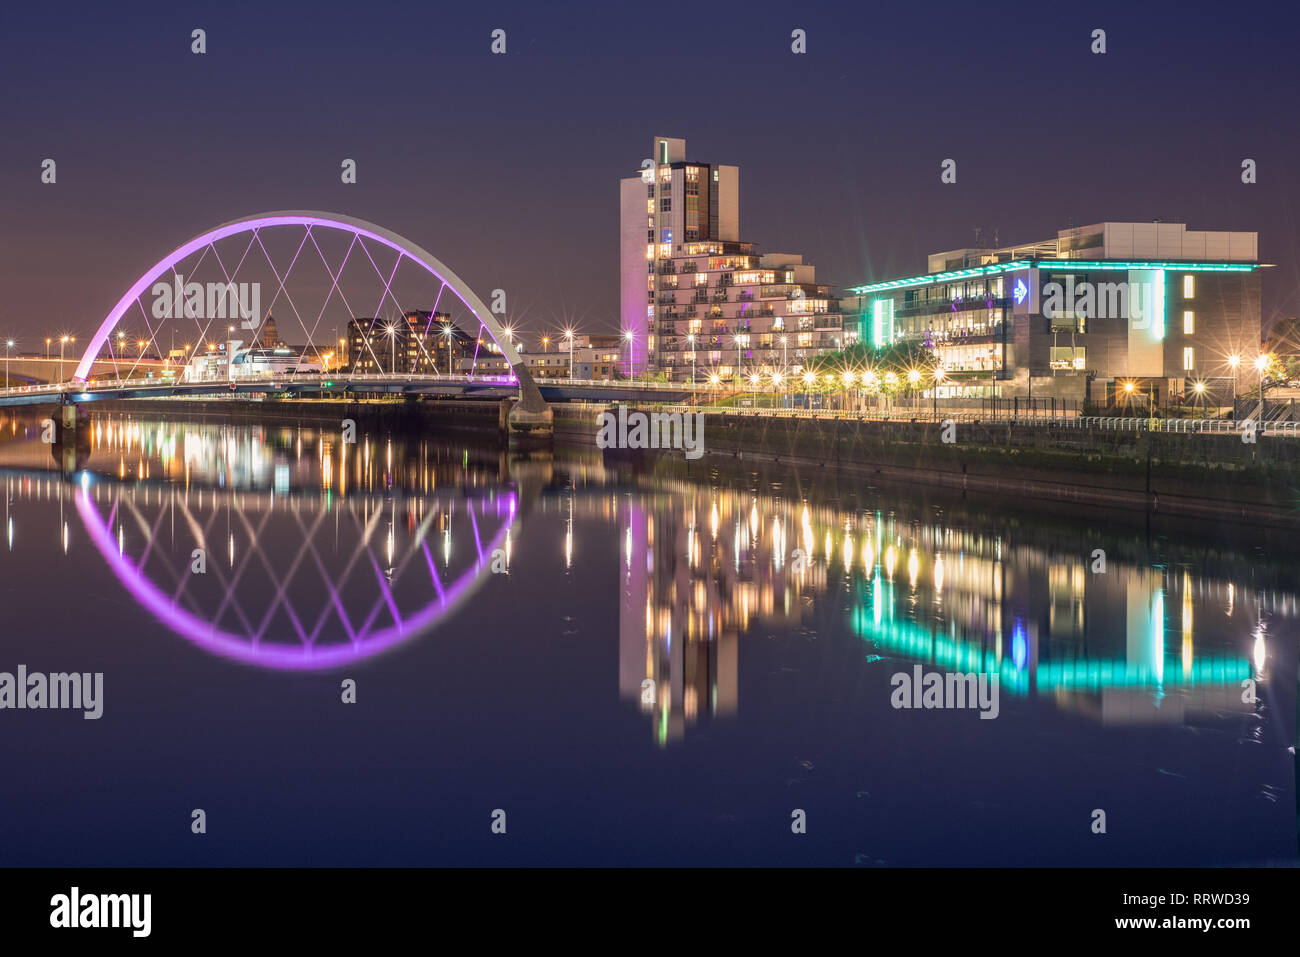 Glasgow/Escocia - 20 de septiembre 2016: El Clyde Arc iluminado en color violeta, reflejado en el río Clyde en la noche Foto de stock